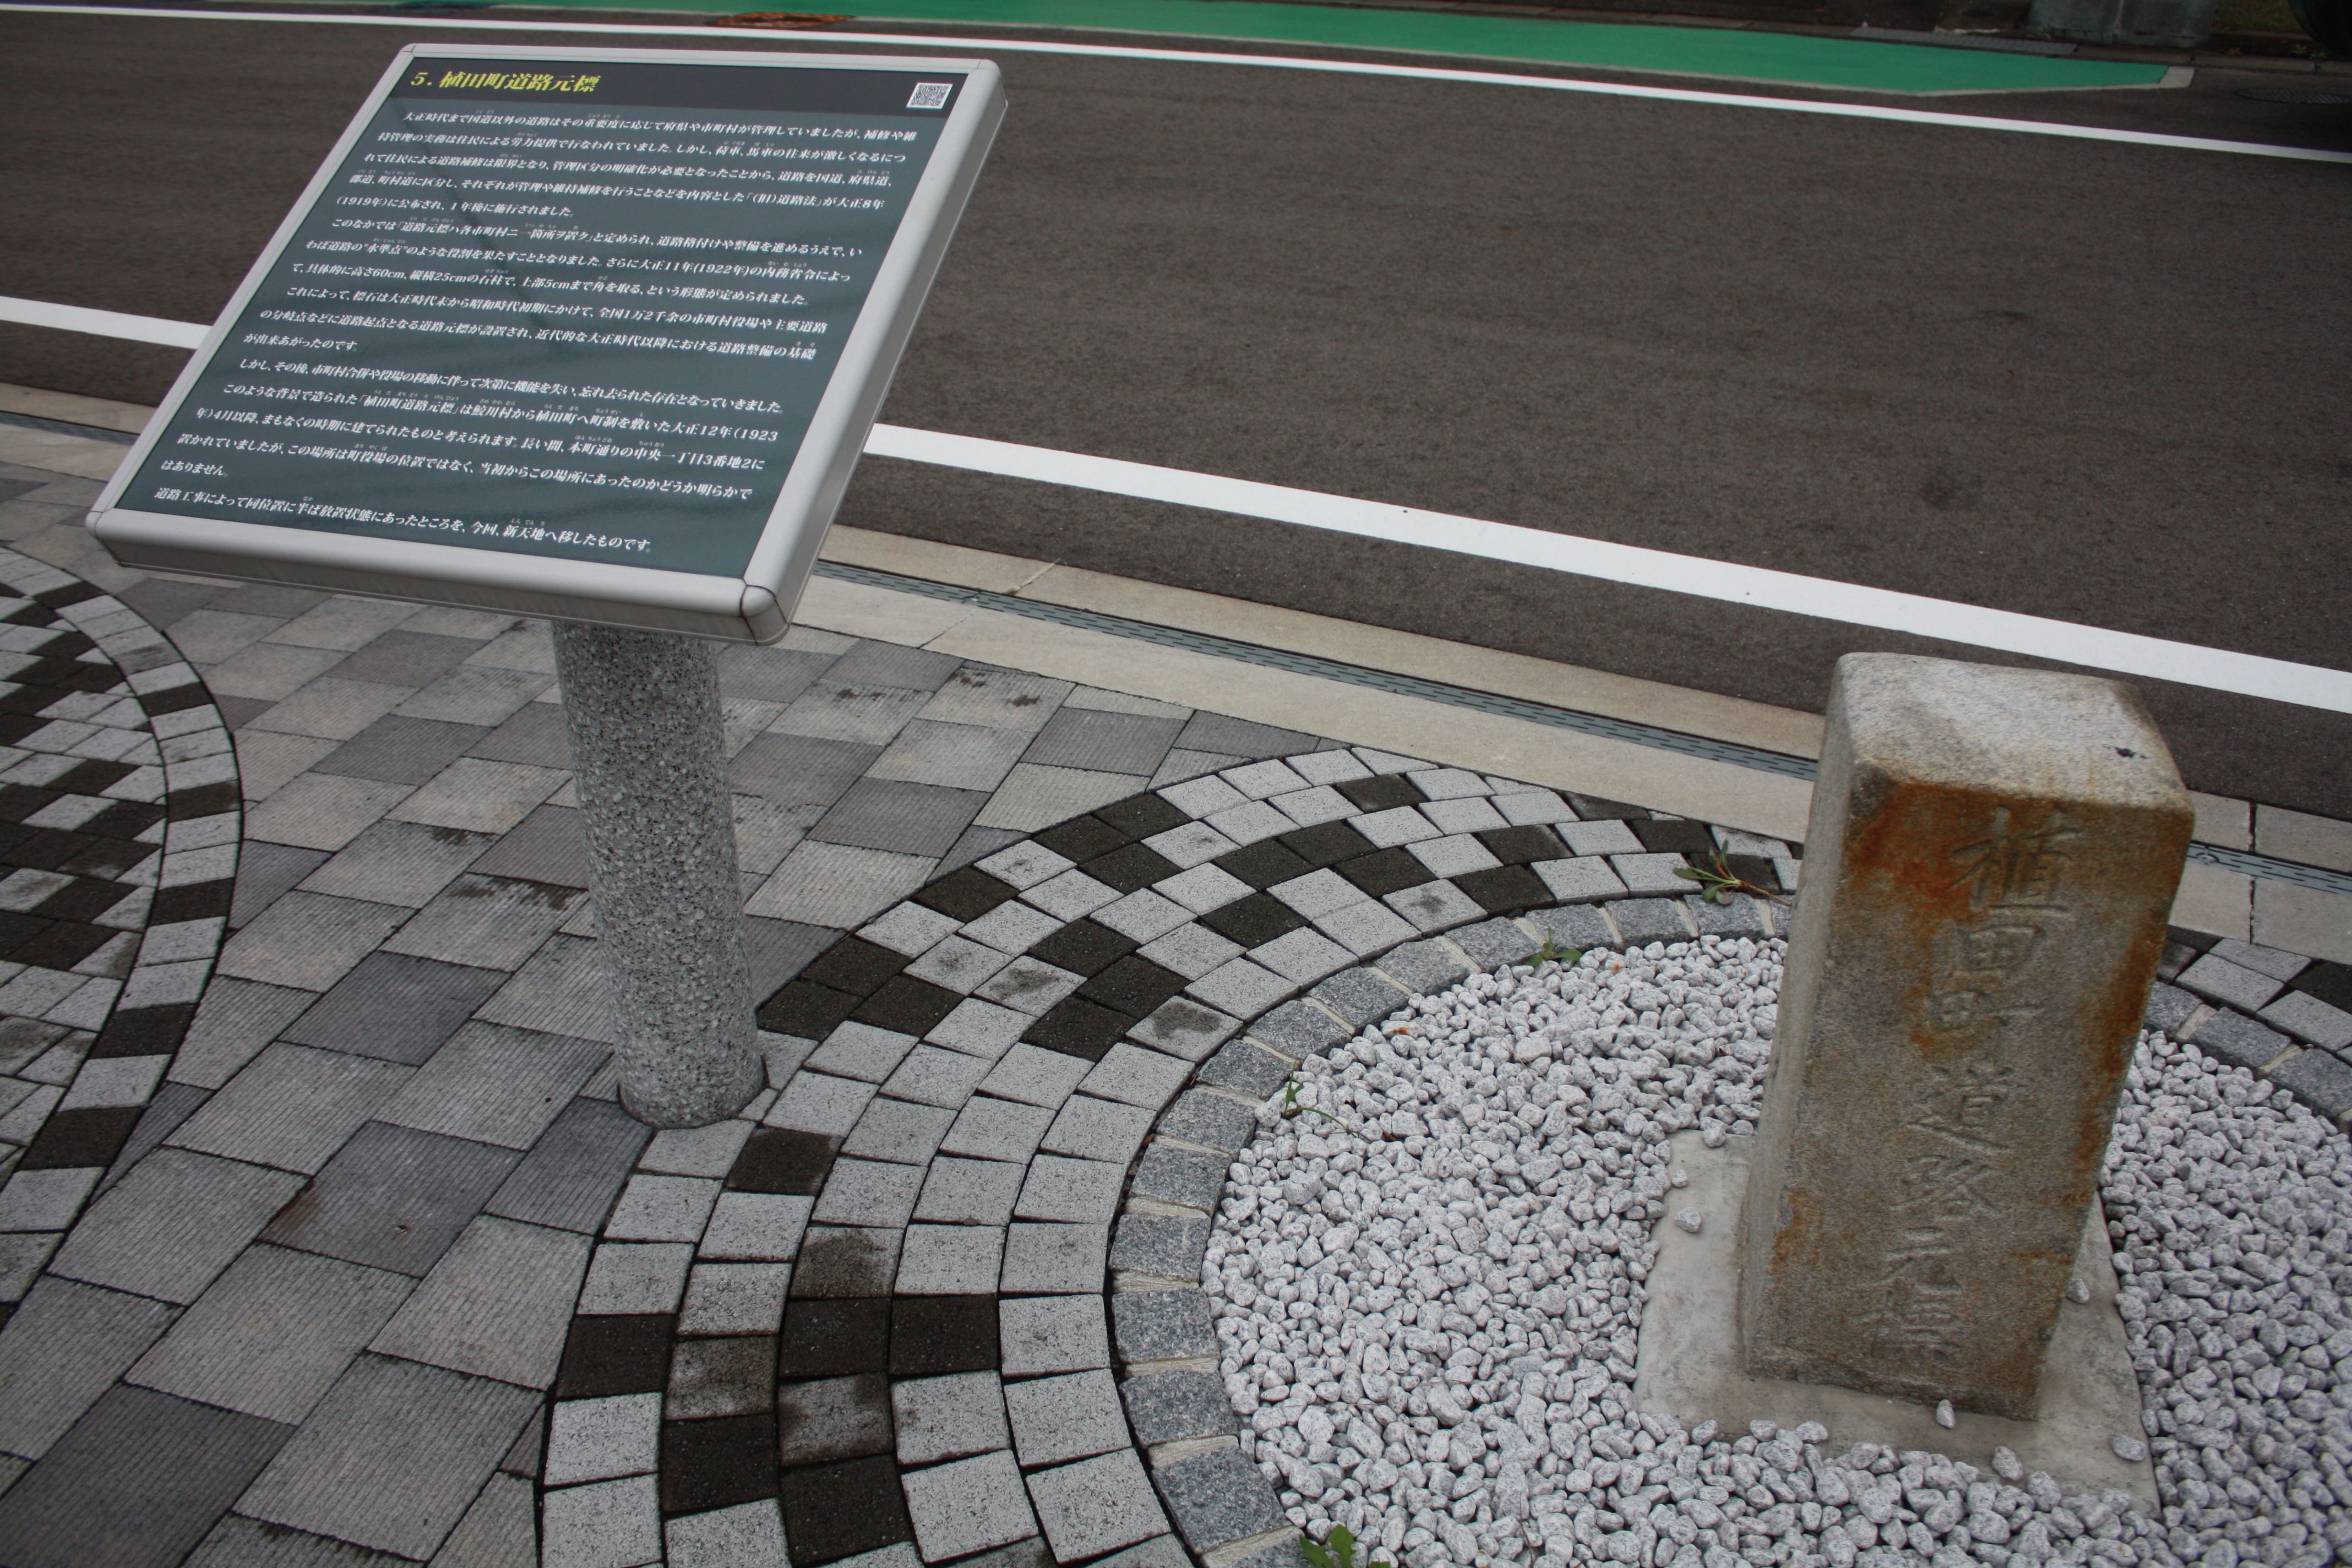 17 植田町道路元標と解説板(平成26年9月、いわき市撮影)